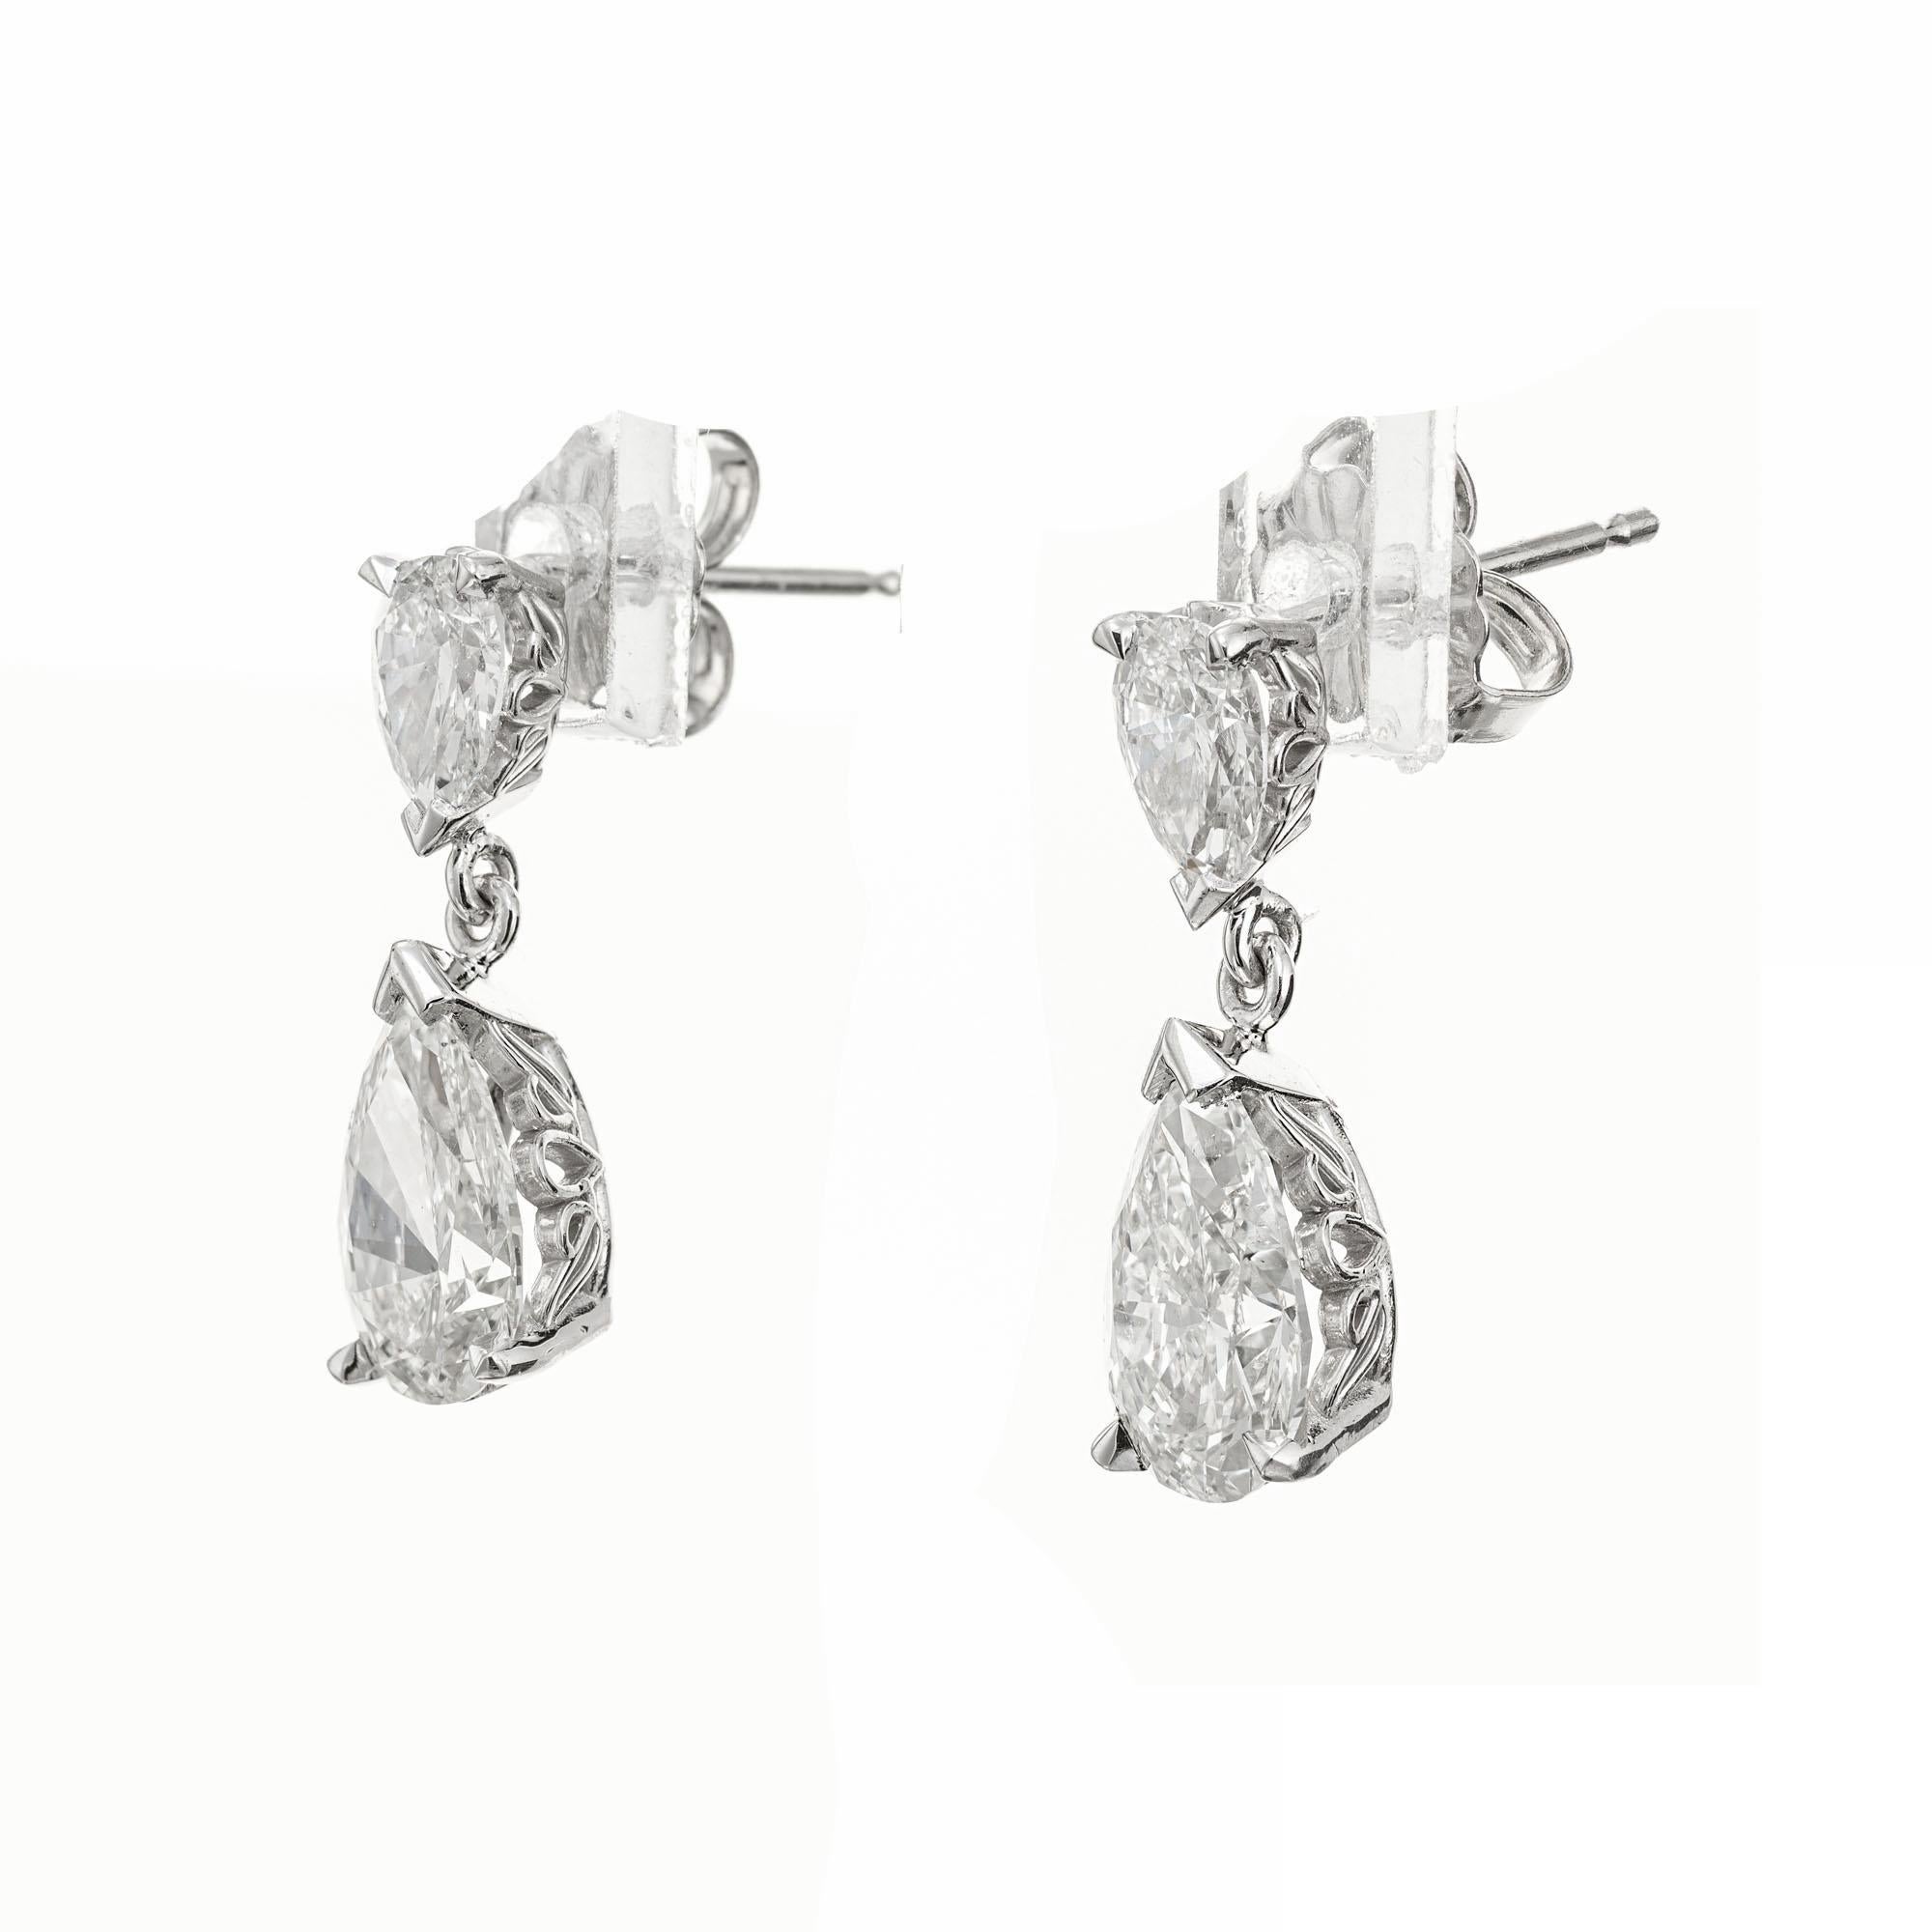 Platin Scroll Design Birne Form Diamant Ohrringe baumeln. Die unteren beiden Diamanten sind GIA-zertifiziert, die 2 oberen birnenförmigen Diamanten sind in Platin gefasst. Entworfen und hergestellt in der Werkstatt von Peter Suchy 

1 birnenförmiger